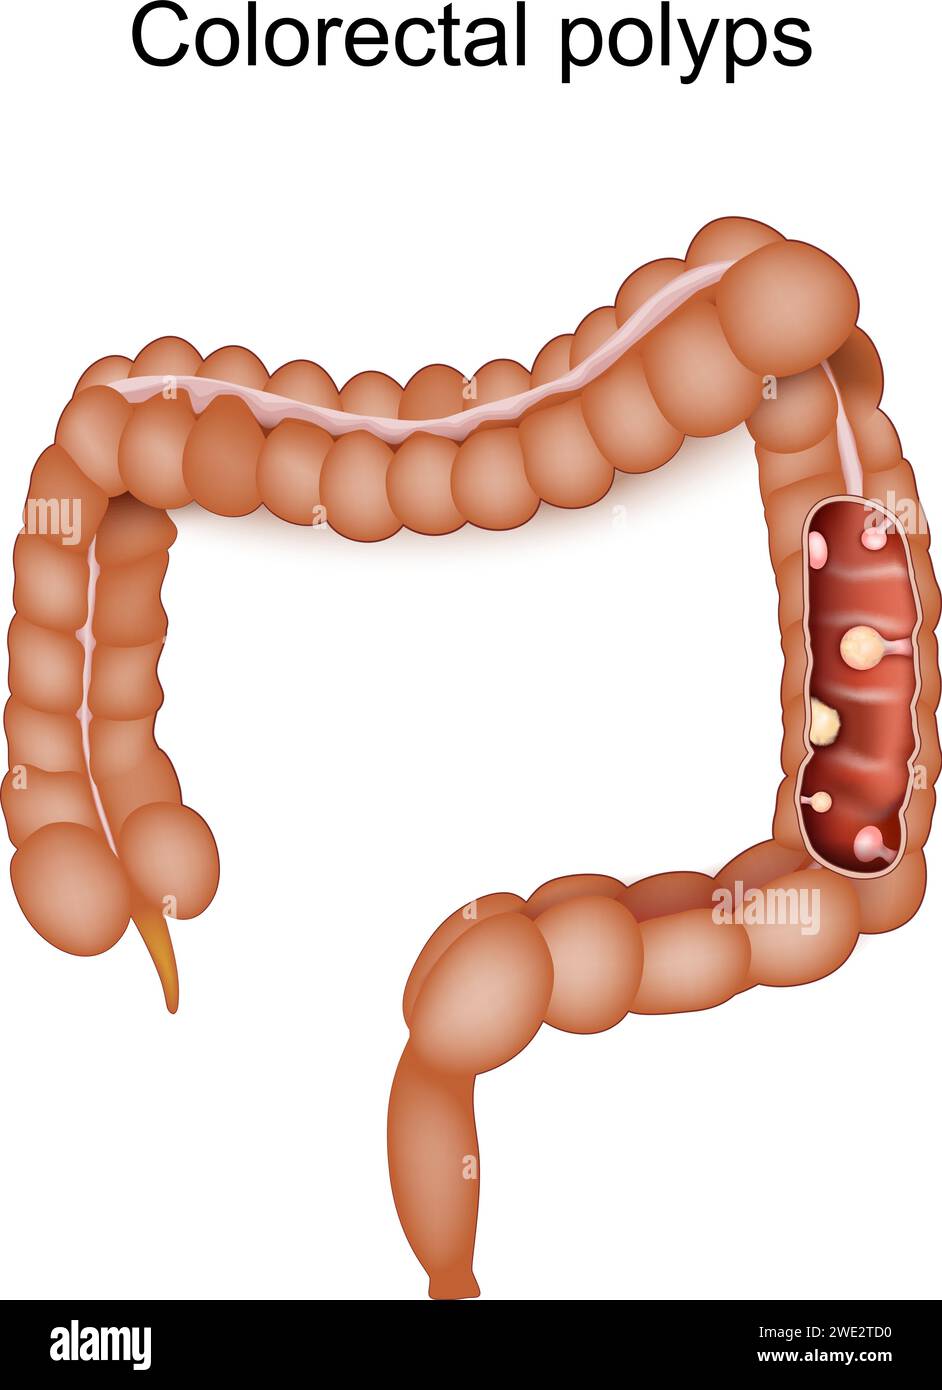 Polypes colorectaux et cancer du côlon. Le gros intestin humain avec conséquence d'une maladie inflammatoire intestinale. Illustration vectorielle Illustration de Vecteur